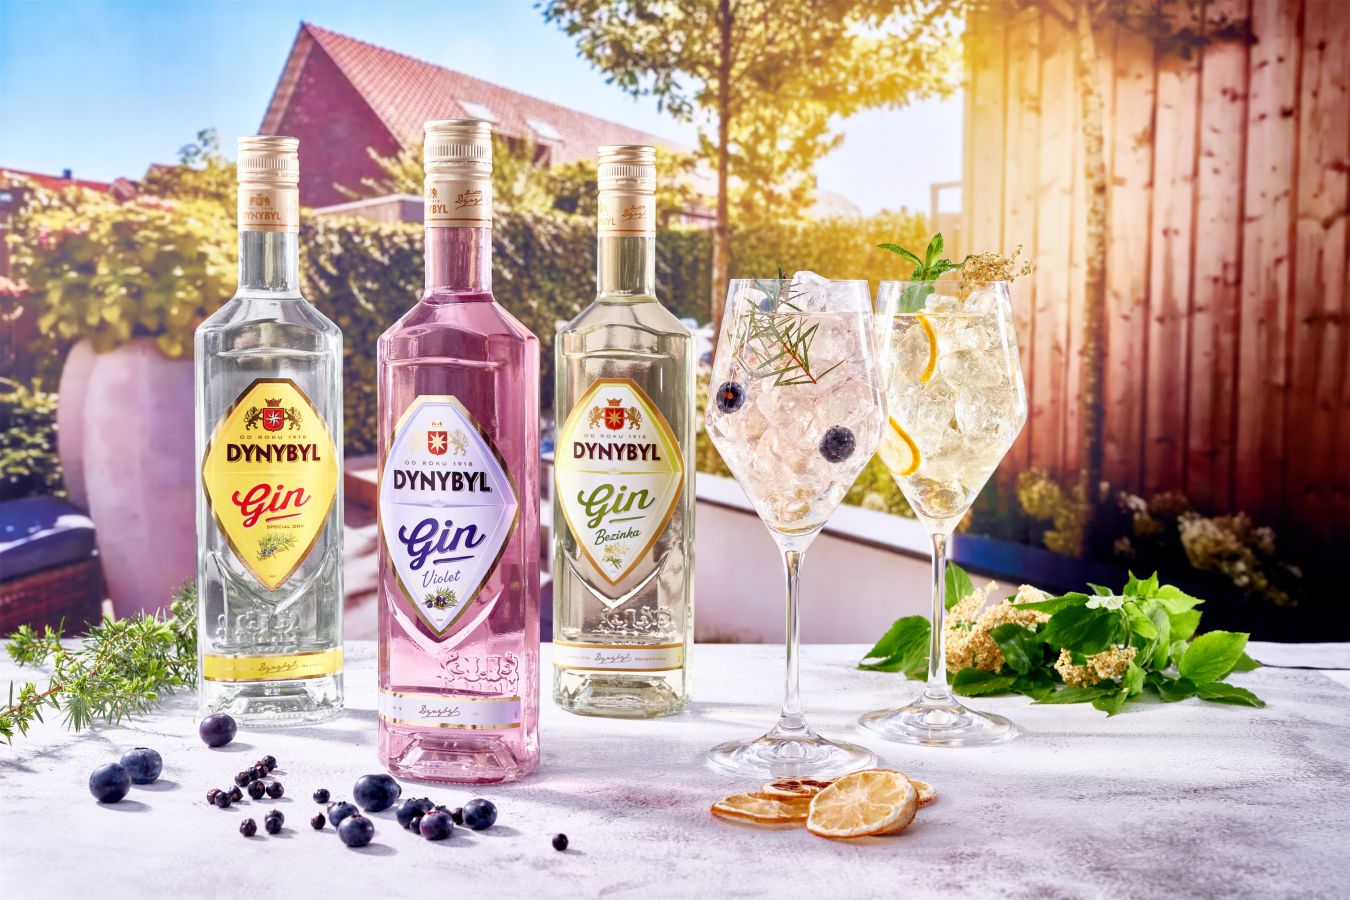 Prvorepubliková značka českých lihovin Dynybyl uvádí na trh nový jalovcový gin s příchutí bezinky